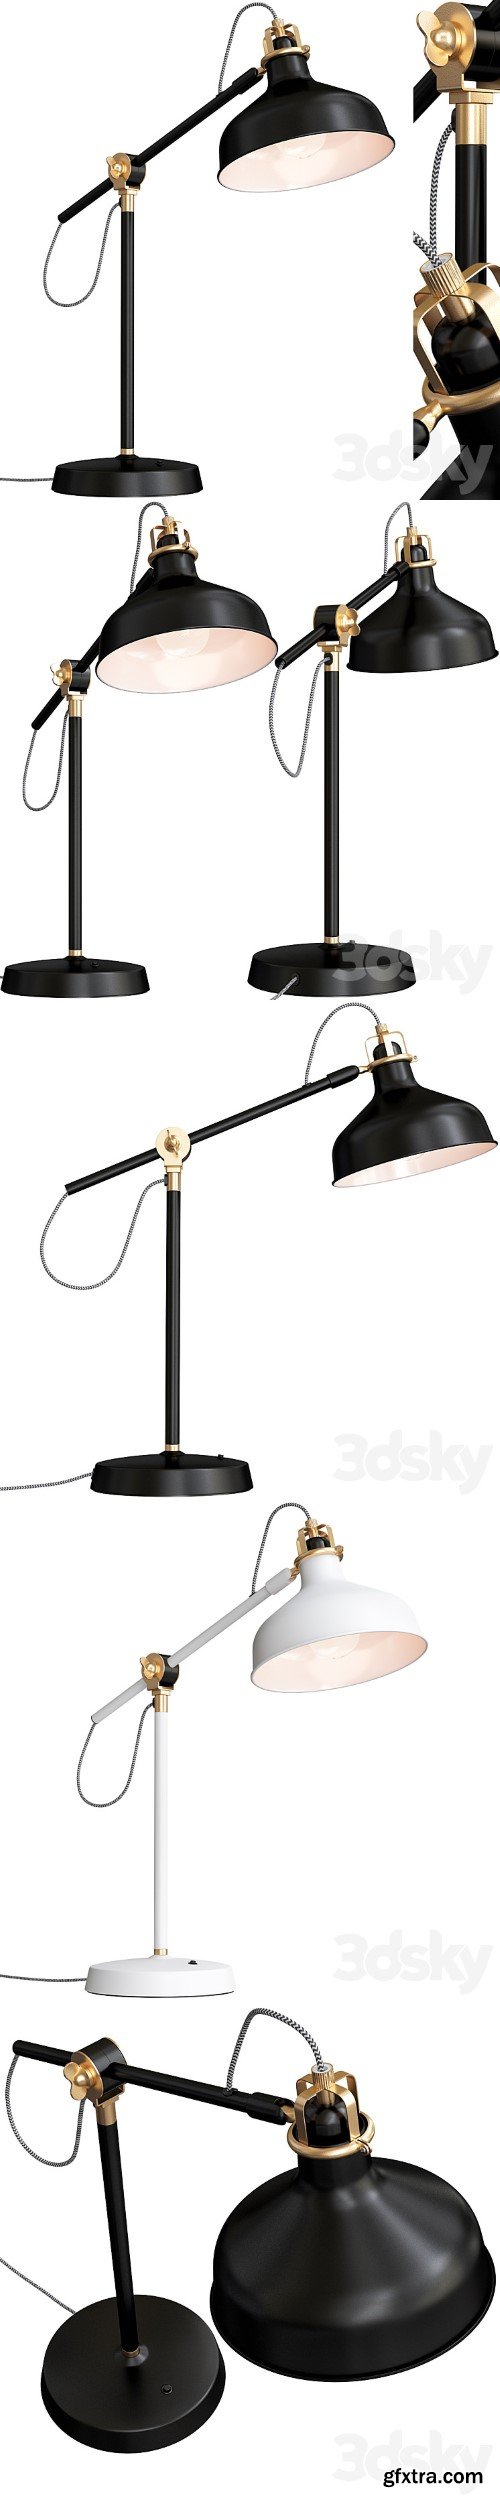 Ranarp Lamp Ikea